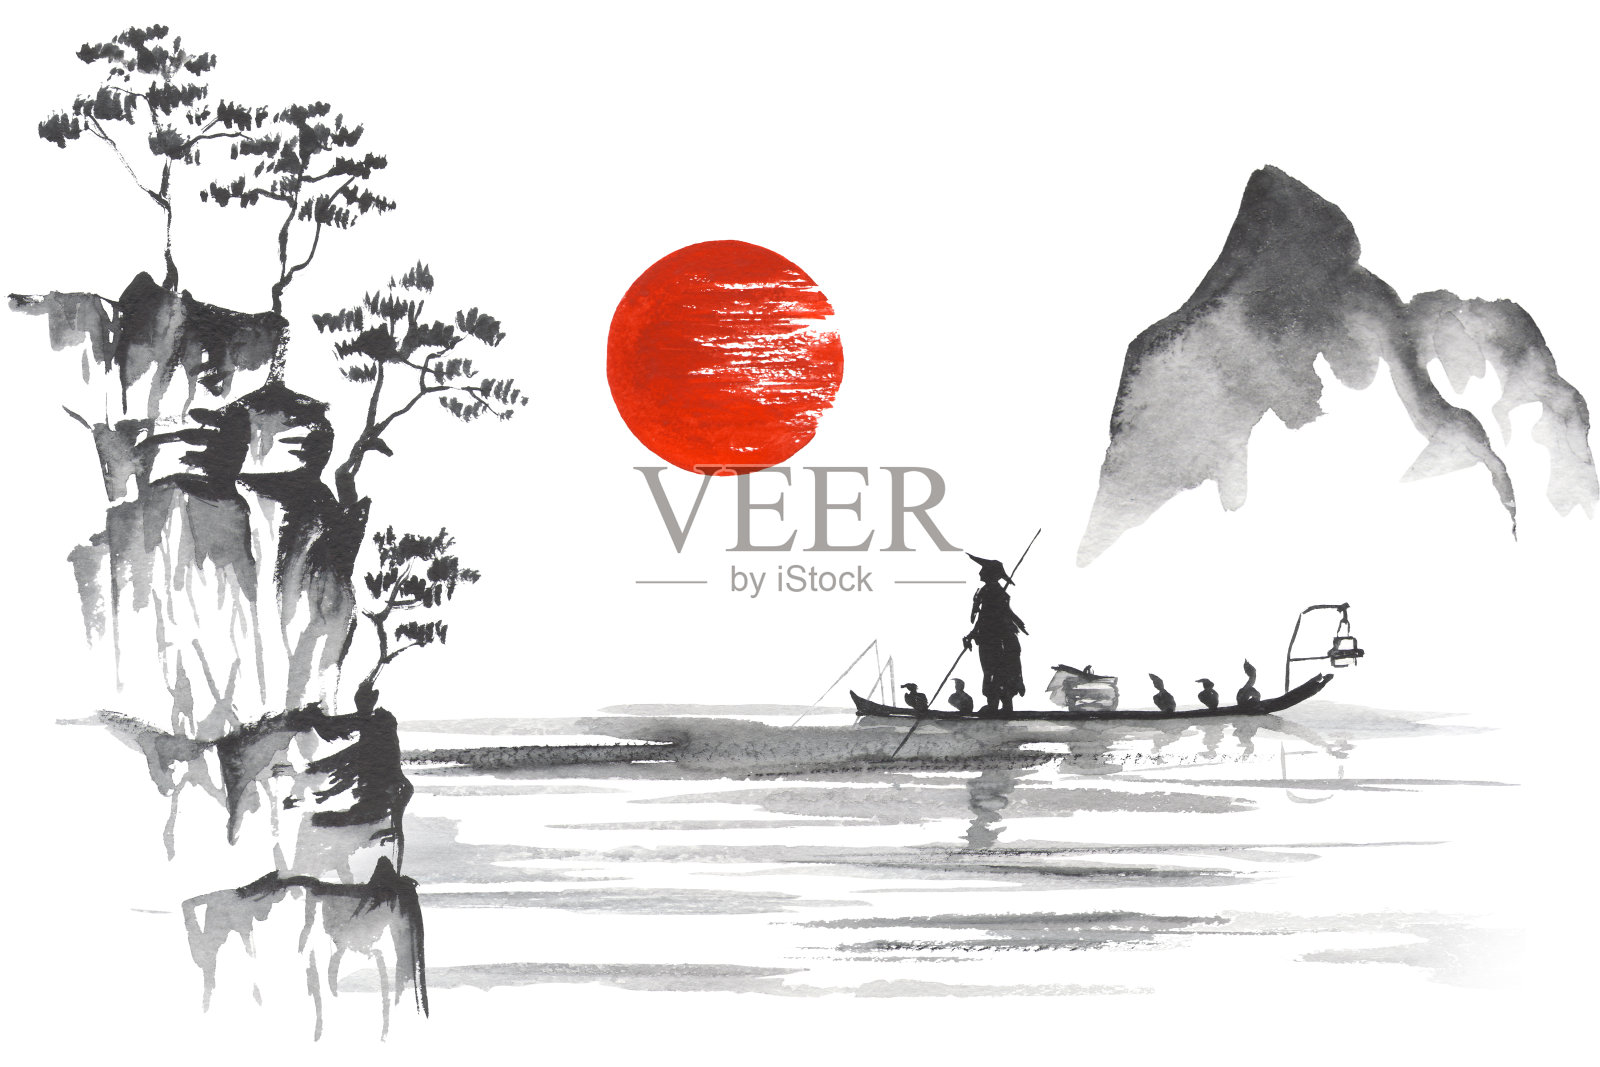 日本传统绘画隅美艺术日本传统绘画隅美艺术人与船插画图片素材